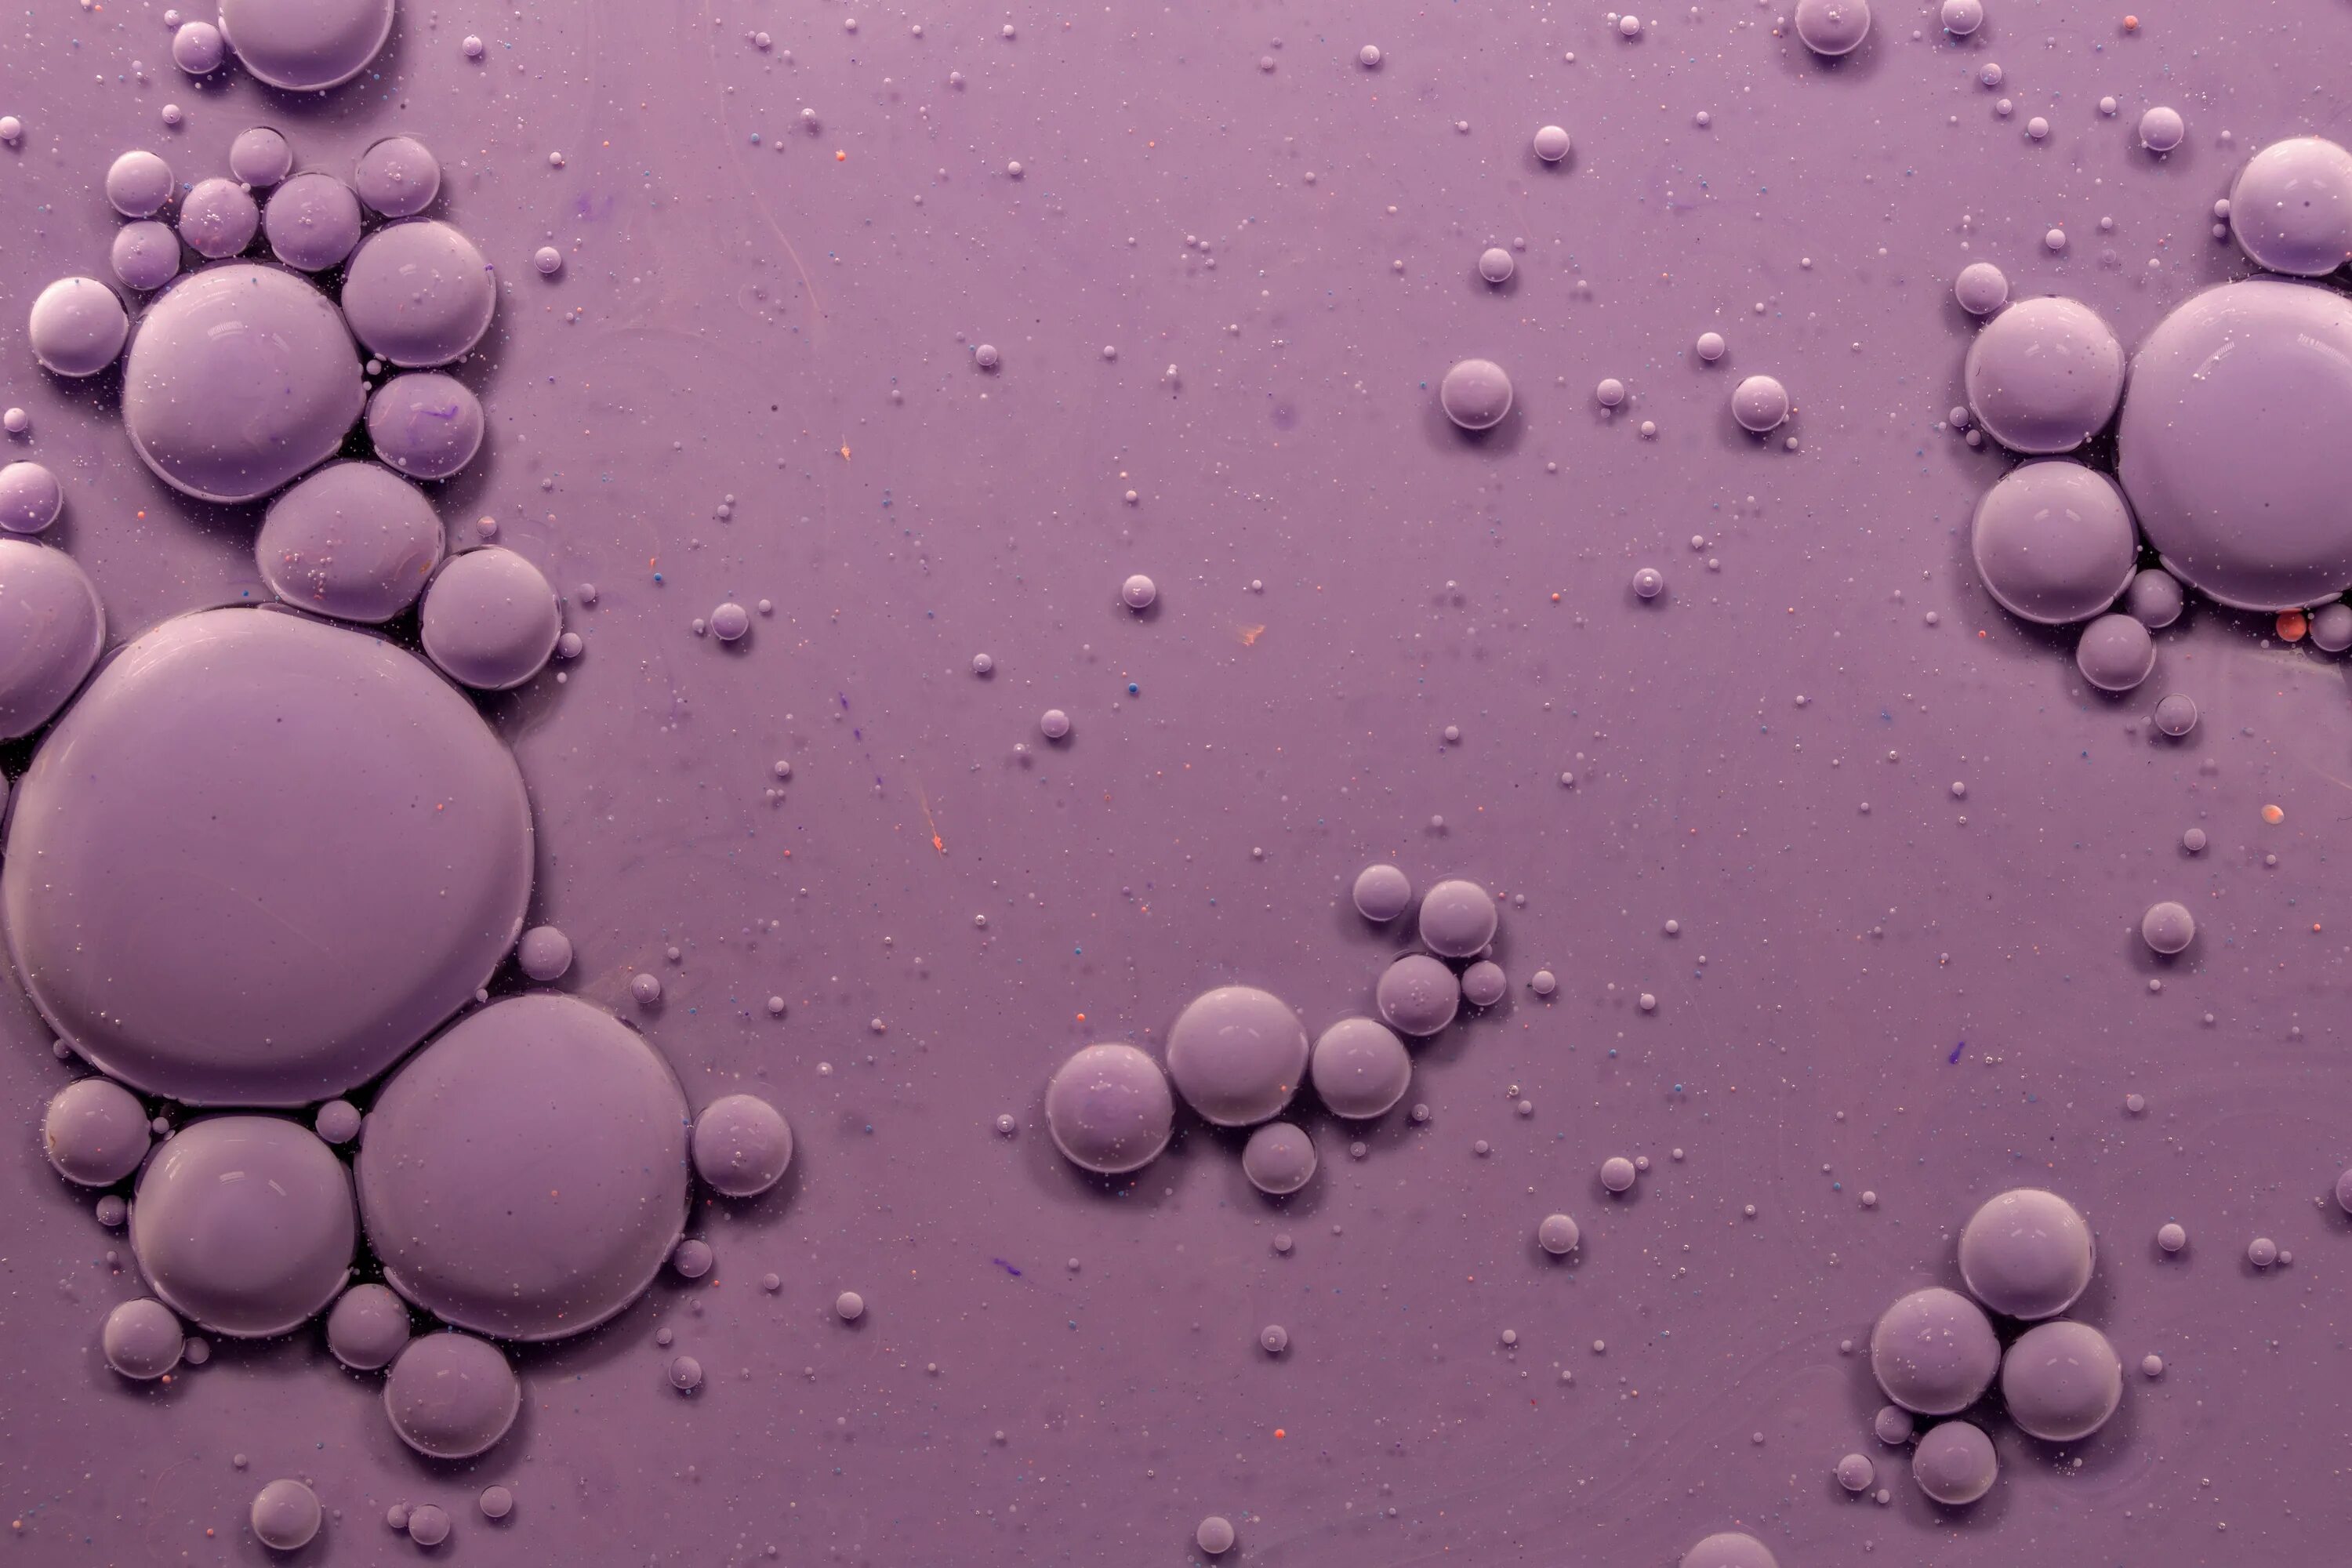 Обои пузыри. Фиолетовые пузыри. Красивые обои для мобильного. Фон пузырьки. Виниловые обои пузырями